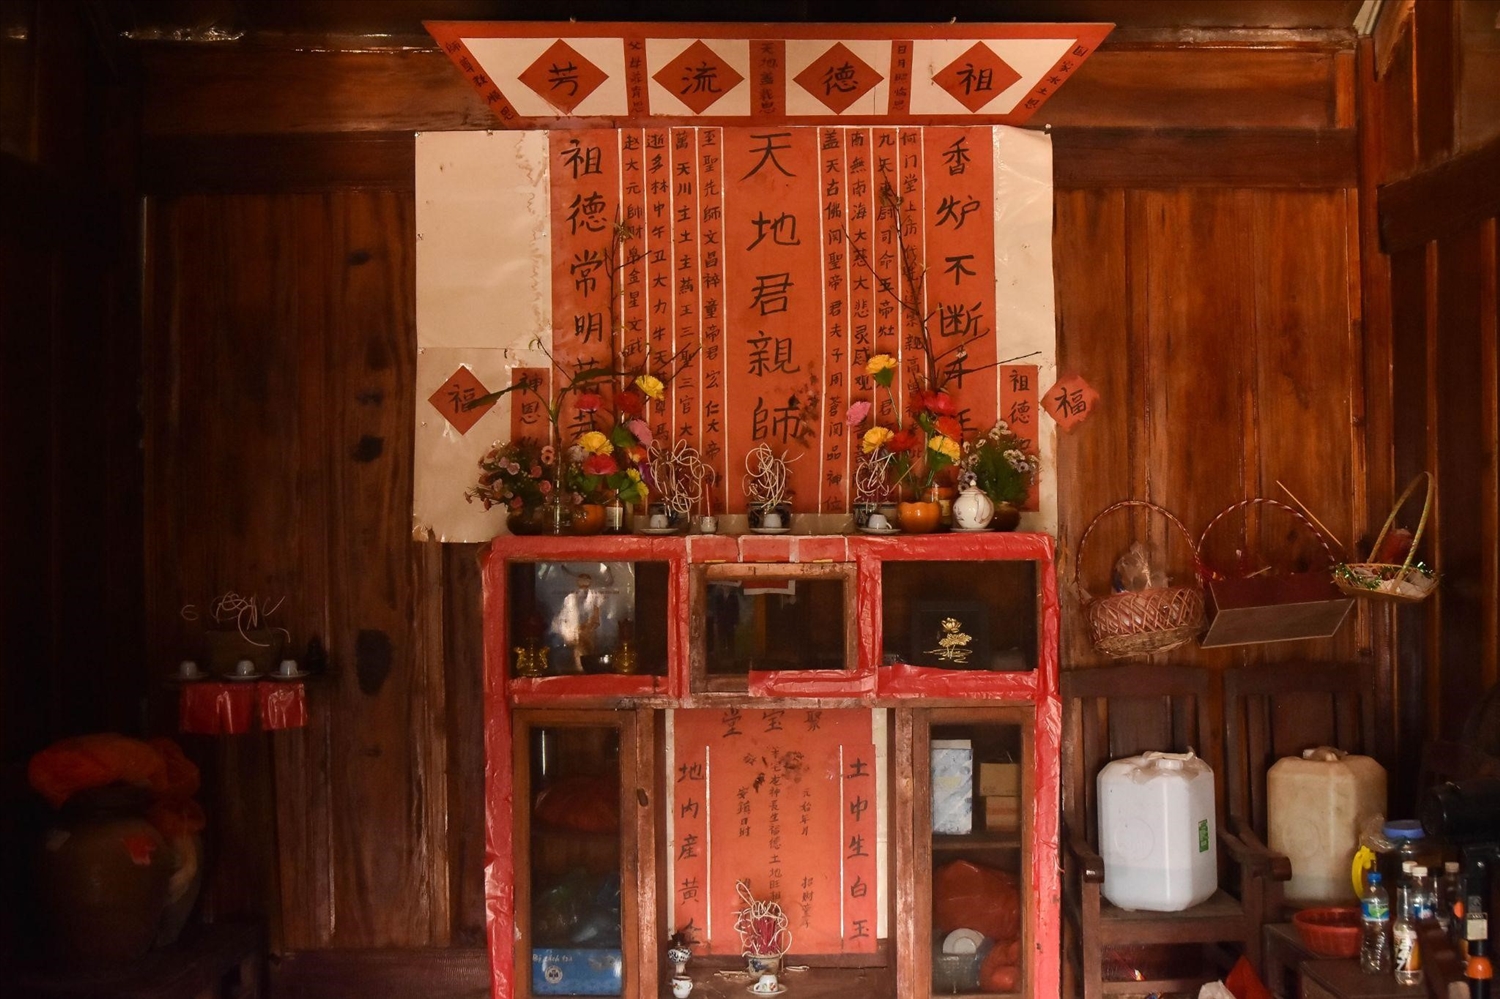 Khu vực bàn thờ được đặt ở vị trí trung tâm nhất trong nhà người Hoa, có màu đỏ là chủ đạo, bài trí thêm nhiều giấy hồng chữ Hán với nội dung cầu phúc, cầu lợi, cầu bình yên